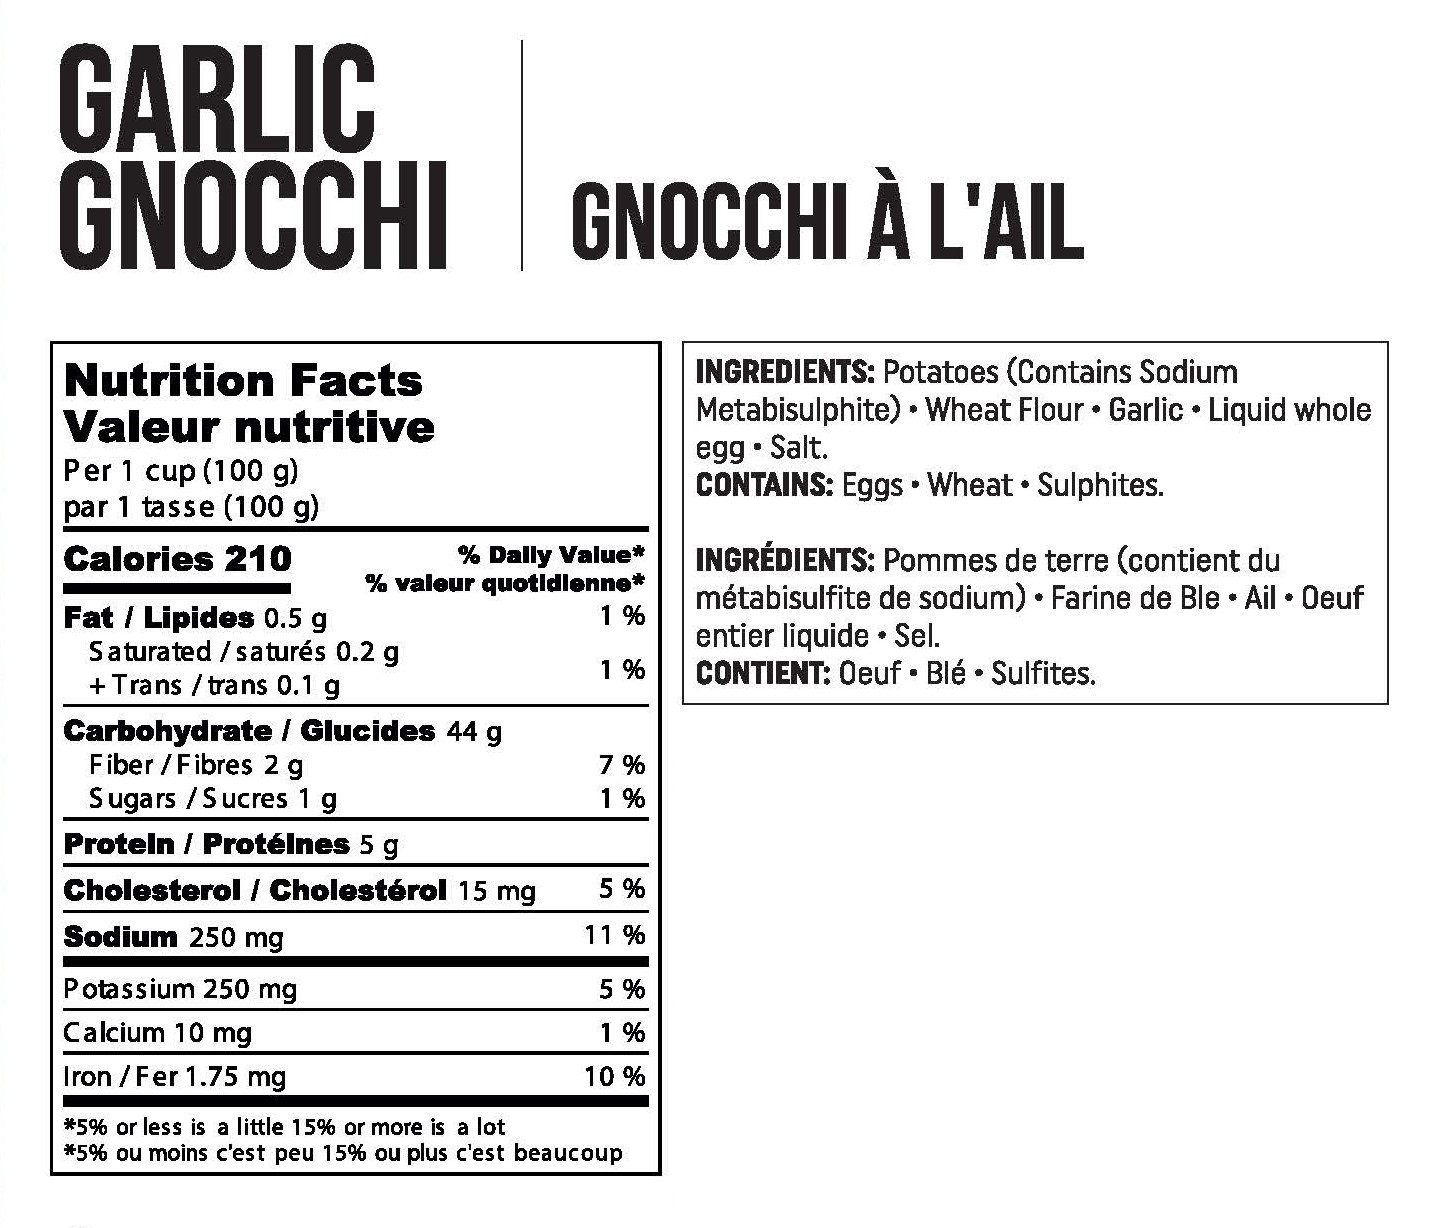 Garlic Gnocchi